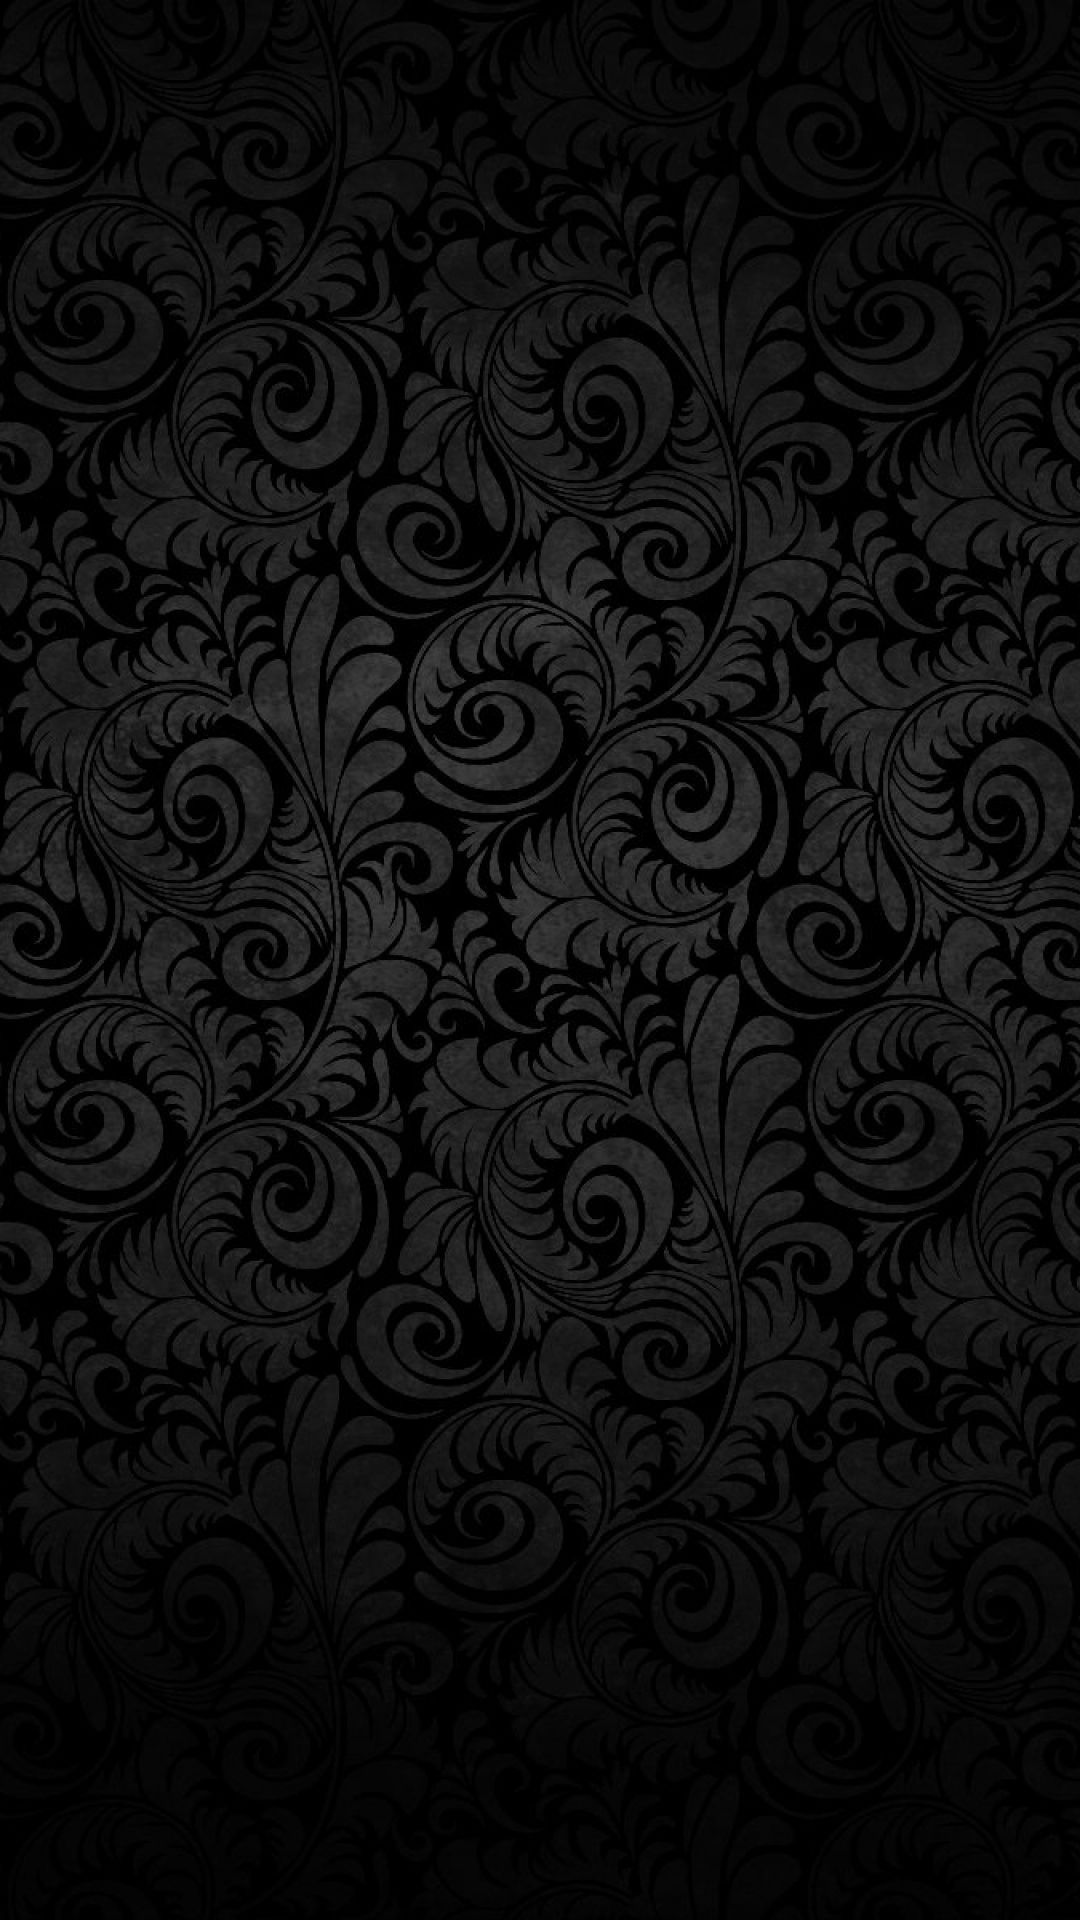 Nokia Black Wallpaper Free Nokia Black Background